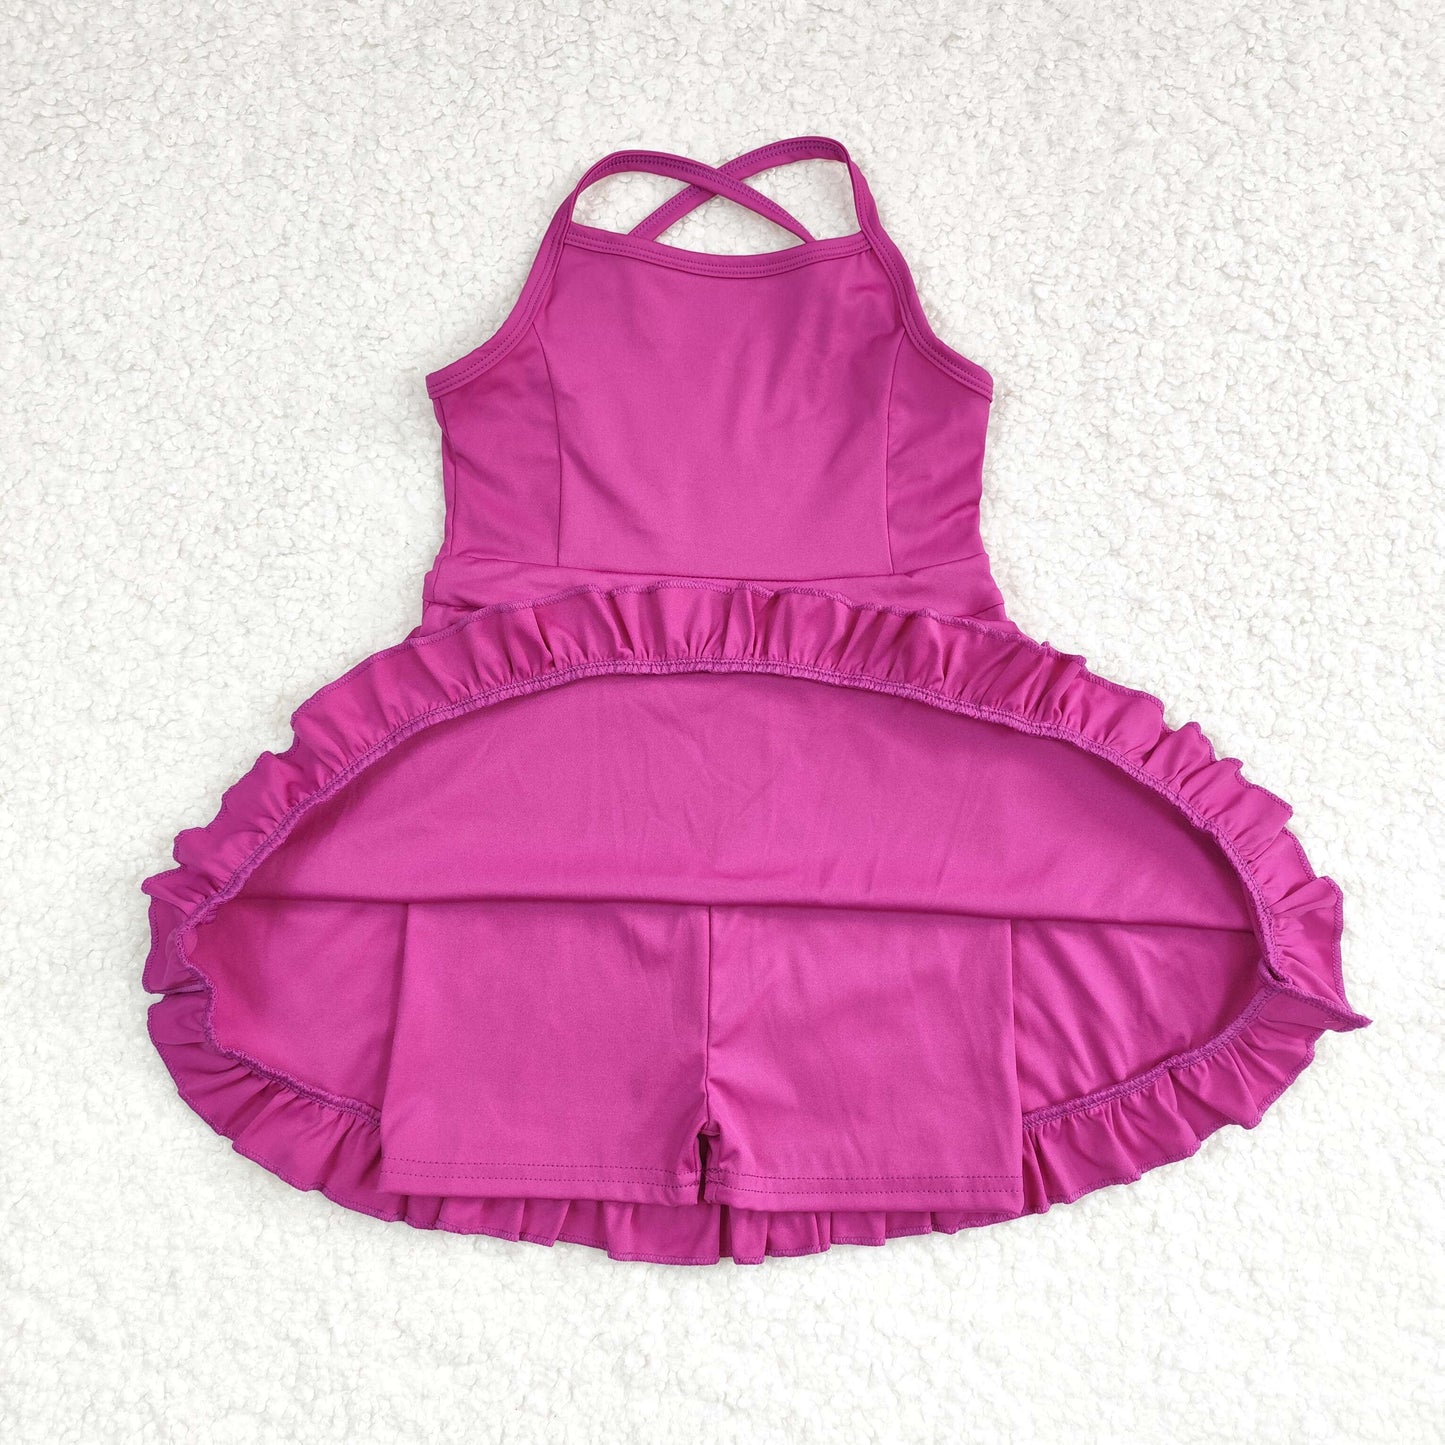 rts no moq S0441 Pure purple sportswear skirt swimsuit